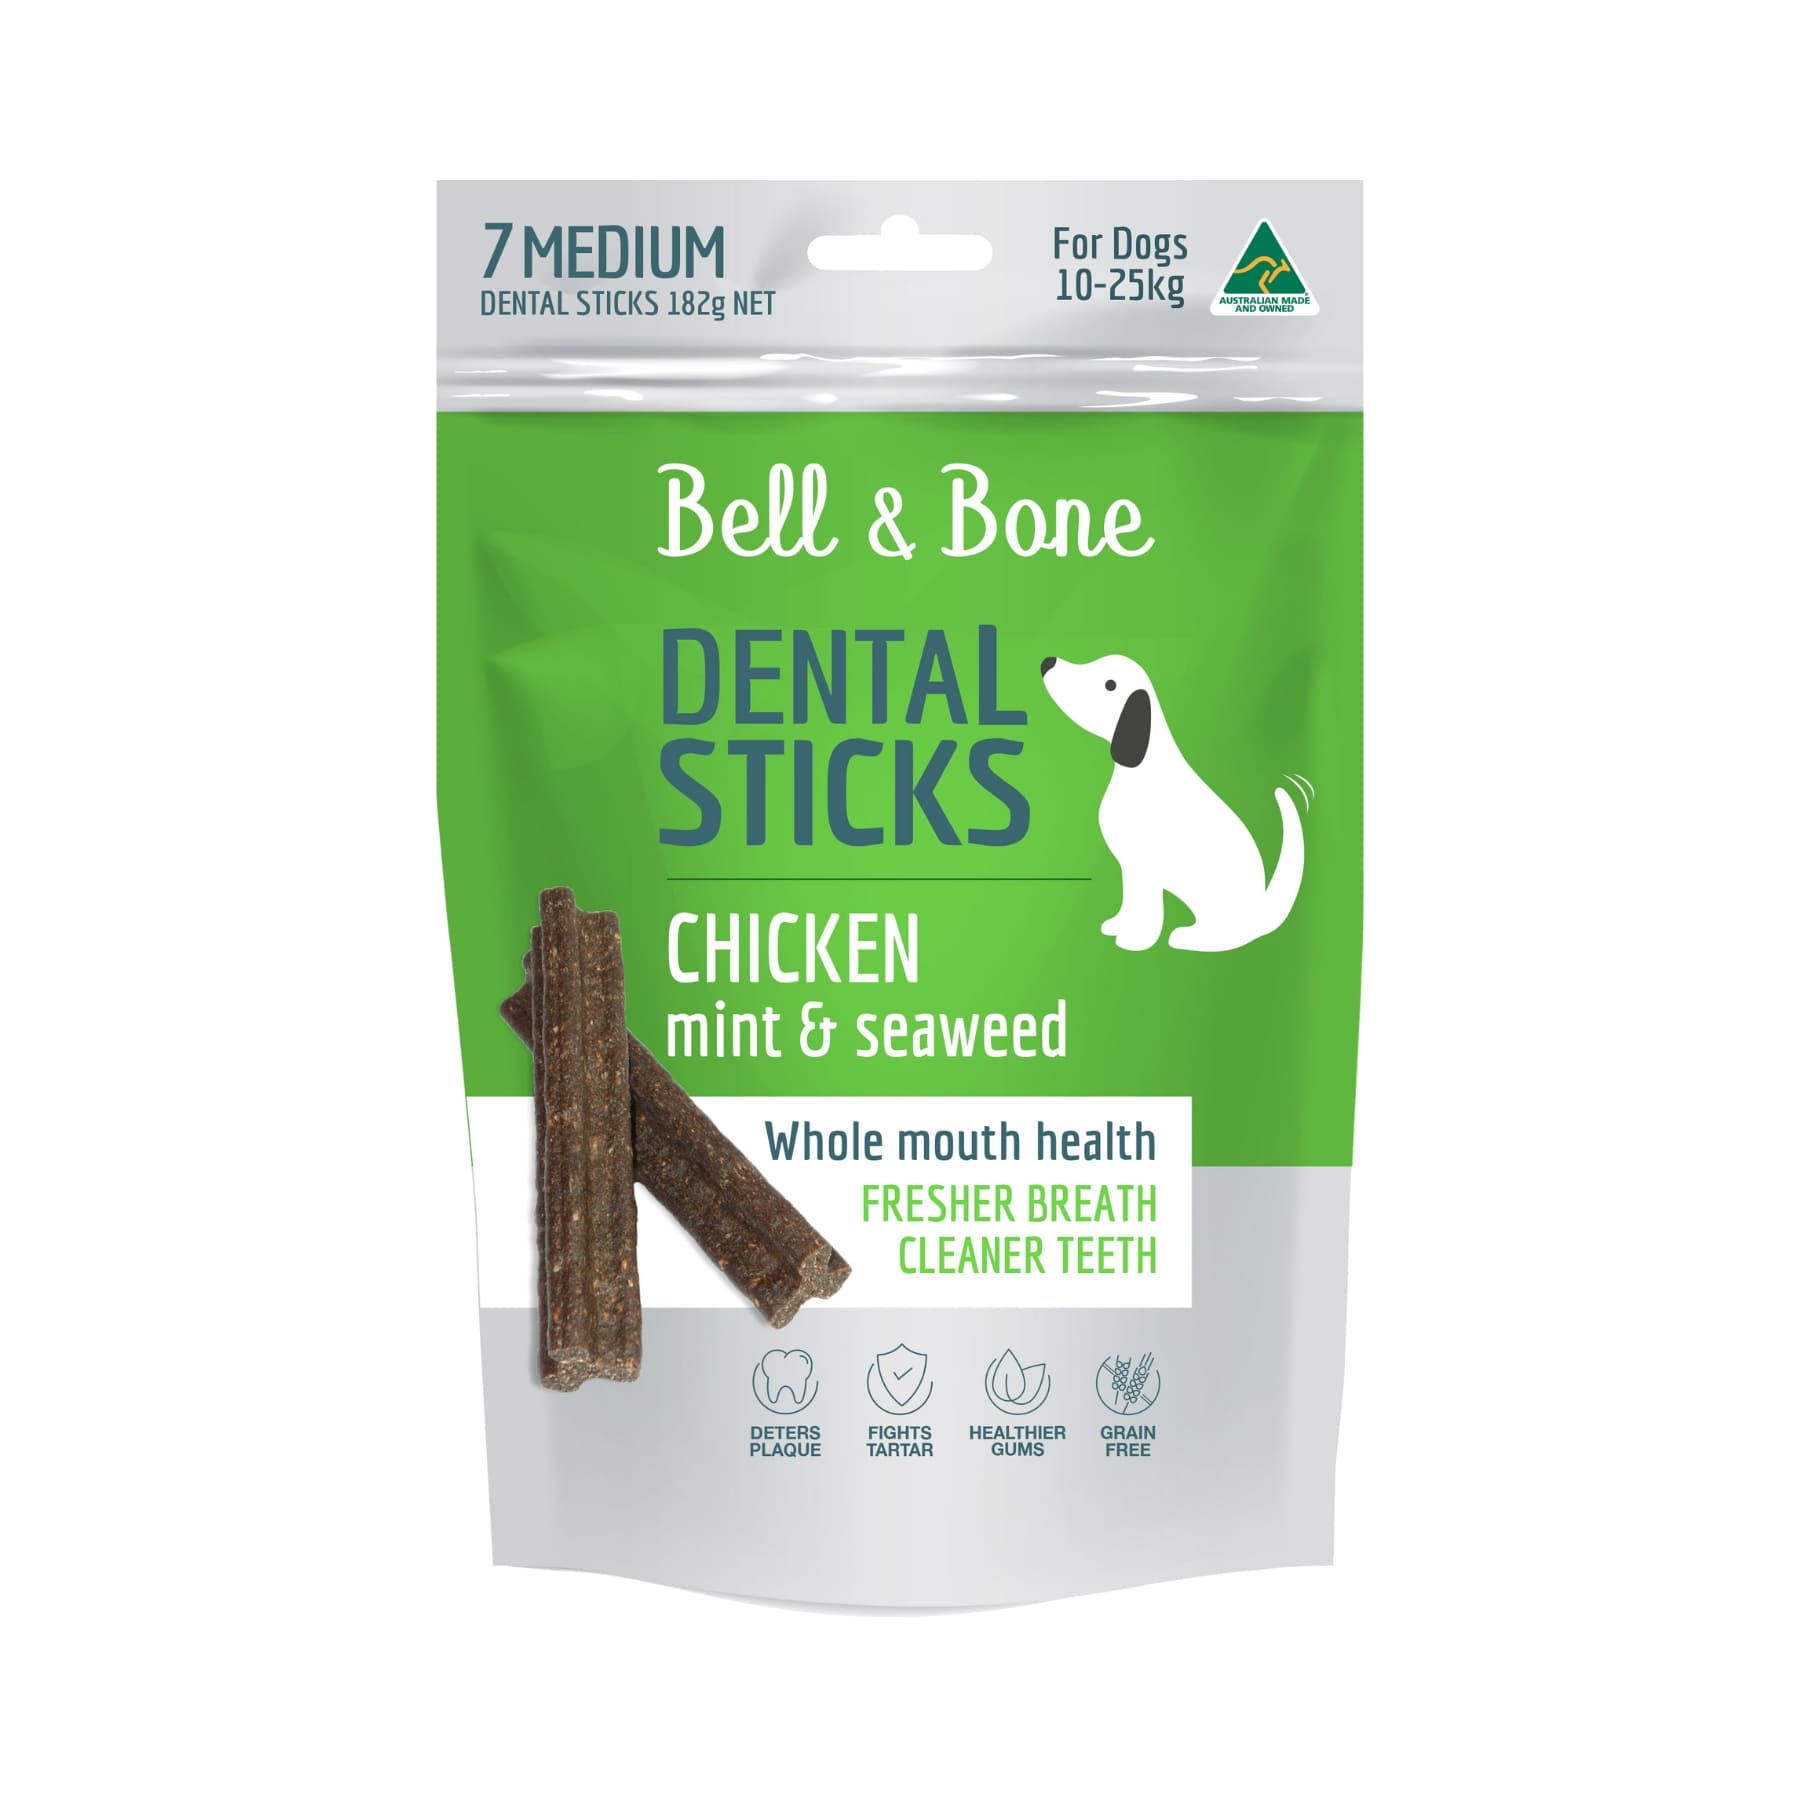 Bell & Bone Dental Sticks Chicken, Mint & Seaweed. Dental Treats for Medium Dogs 10kg-25kg